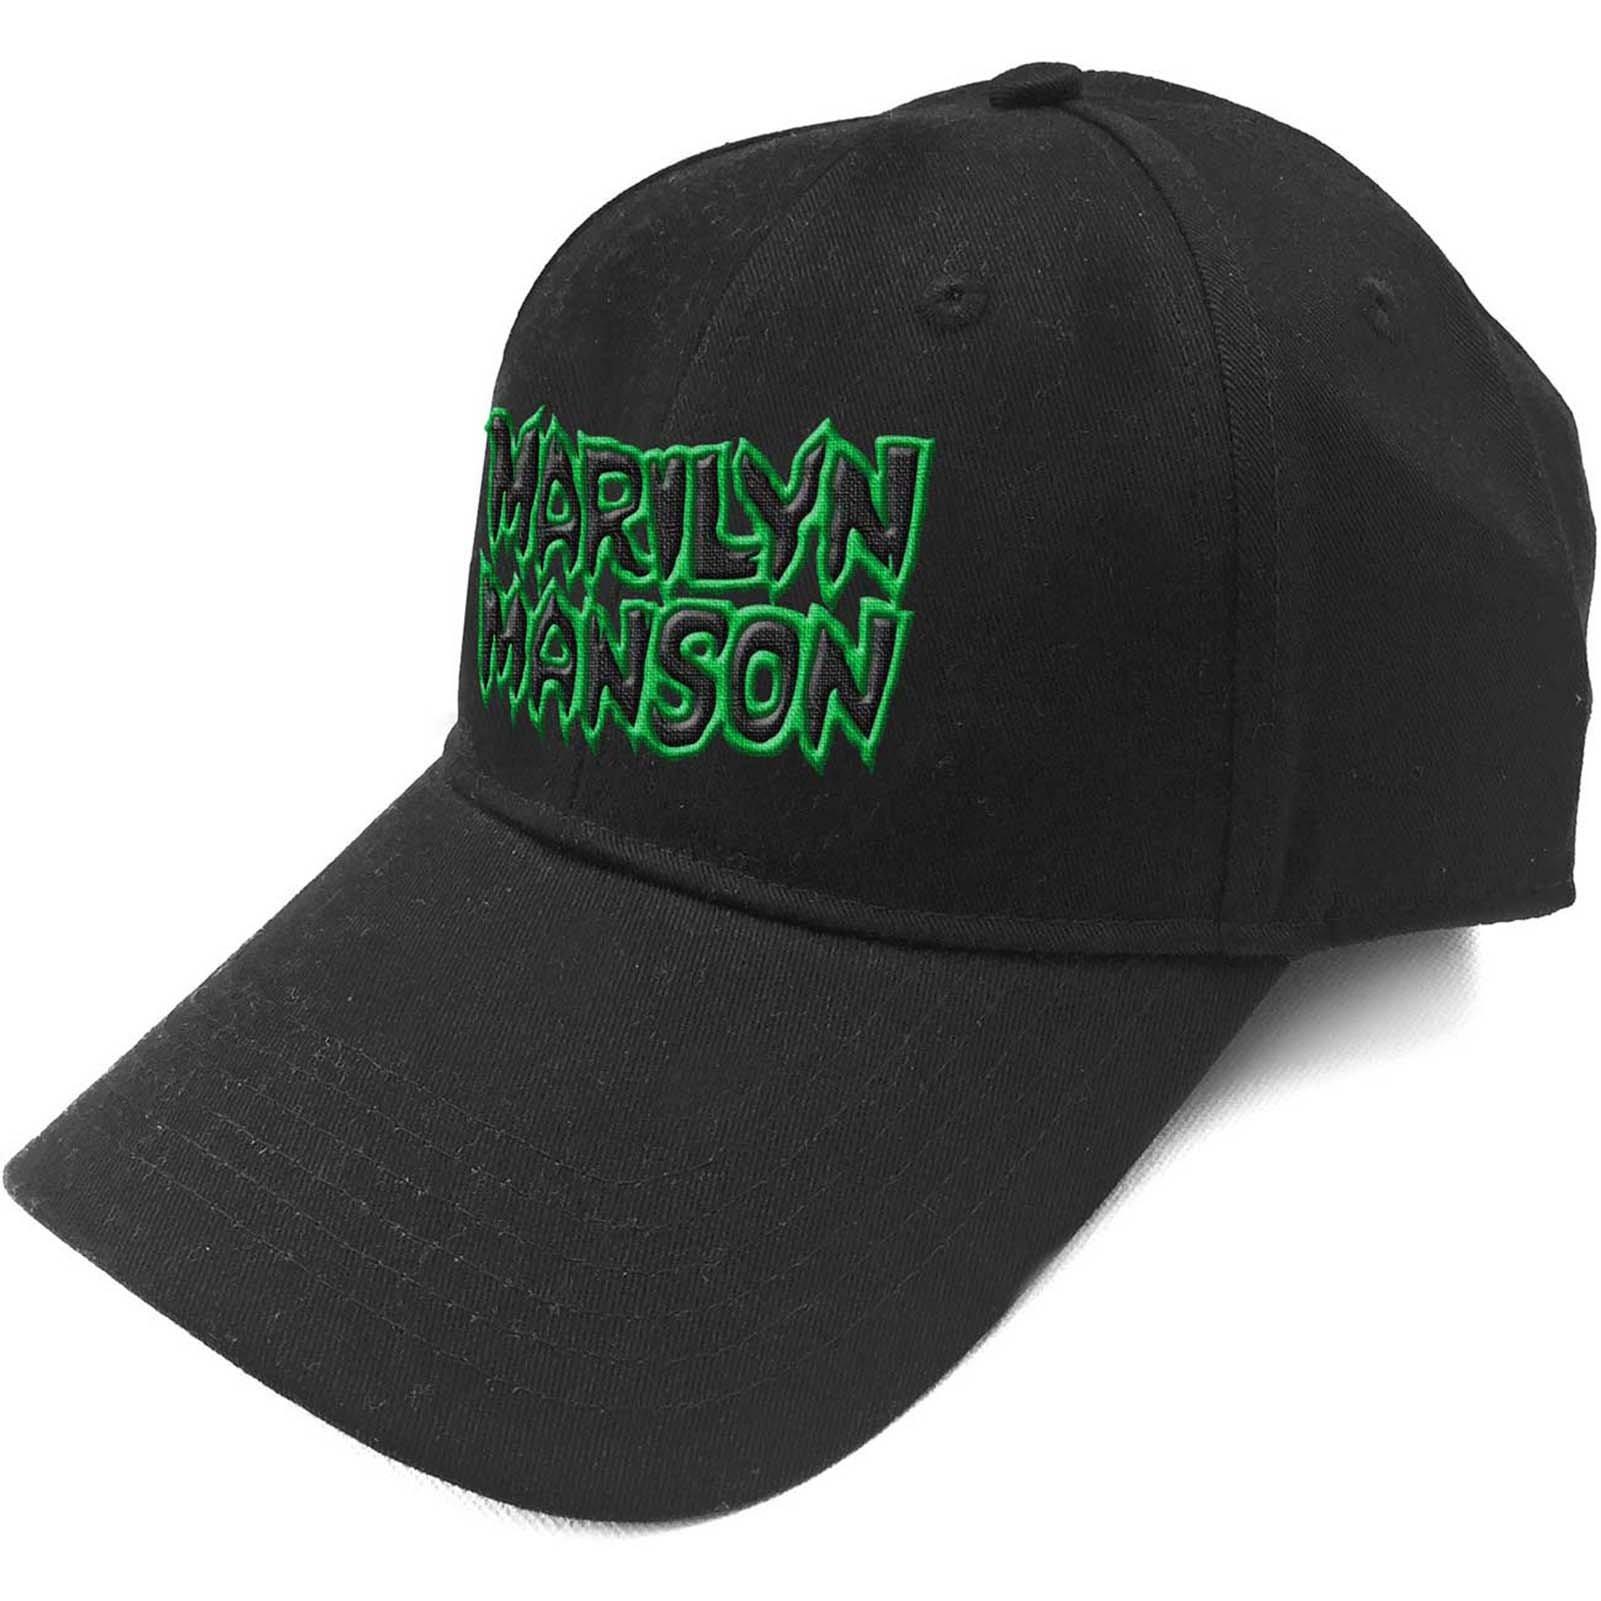 Бейсбольная кепка с текстовым логотипом и ремешком на спине Marilyn Manson, черный оригинальная кепка с вышивкой bmw новая спортивная кепка bmw бейсболка кепка для гольфа